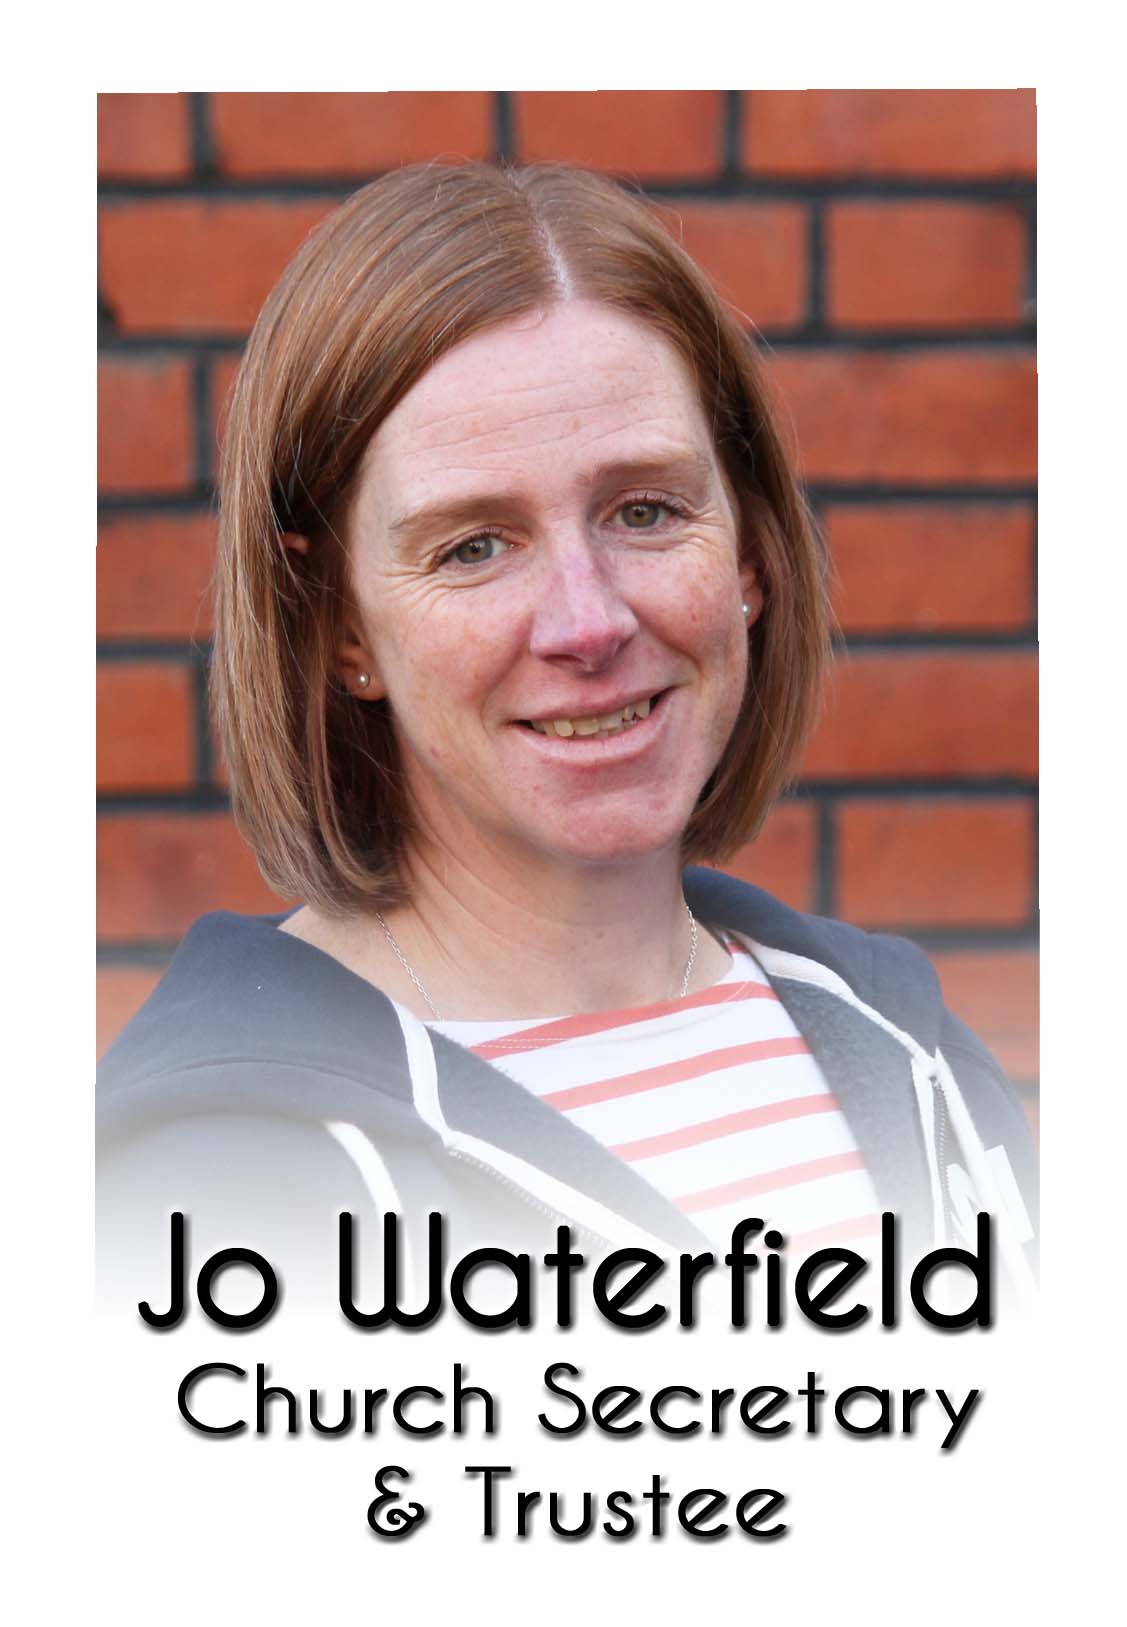 Jo Waterfield labelled